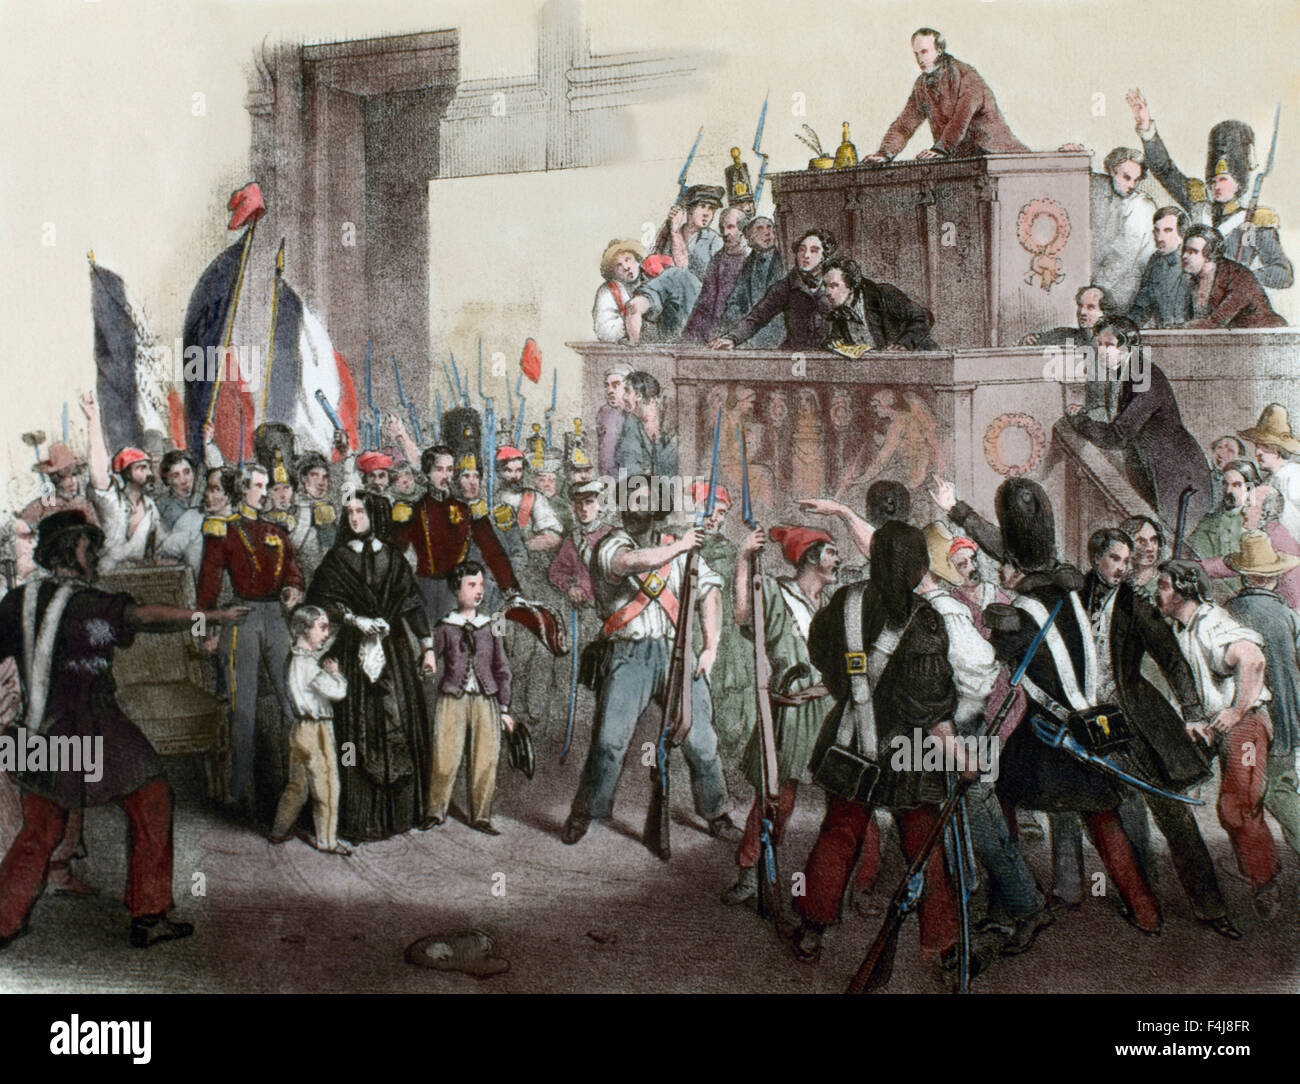 В европе будет революция. Революция во Франции 1848-1849. Революции революции 1848 года во Франции.